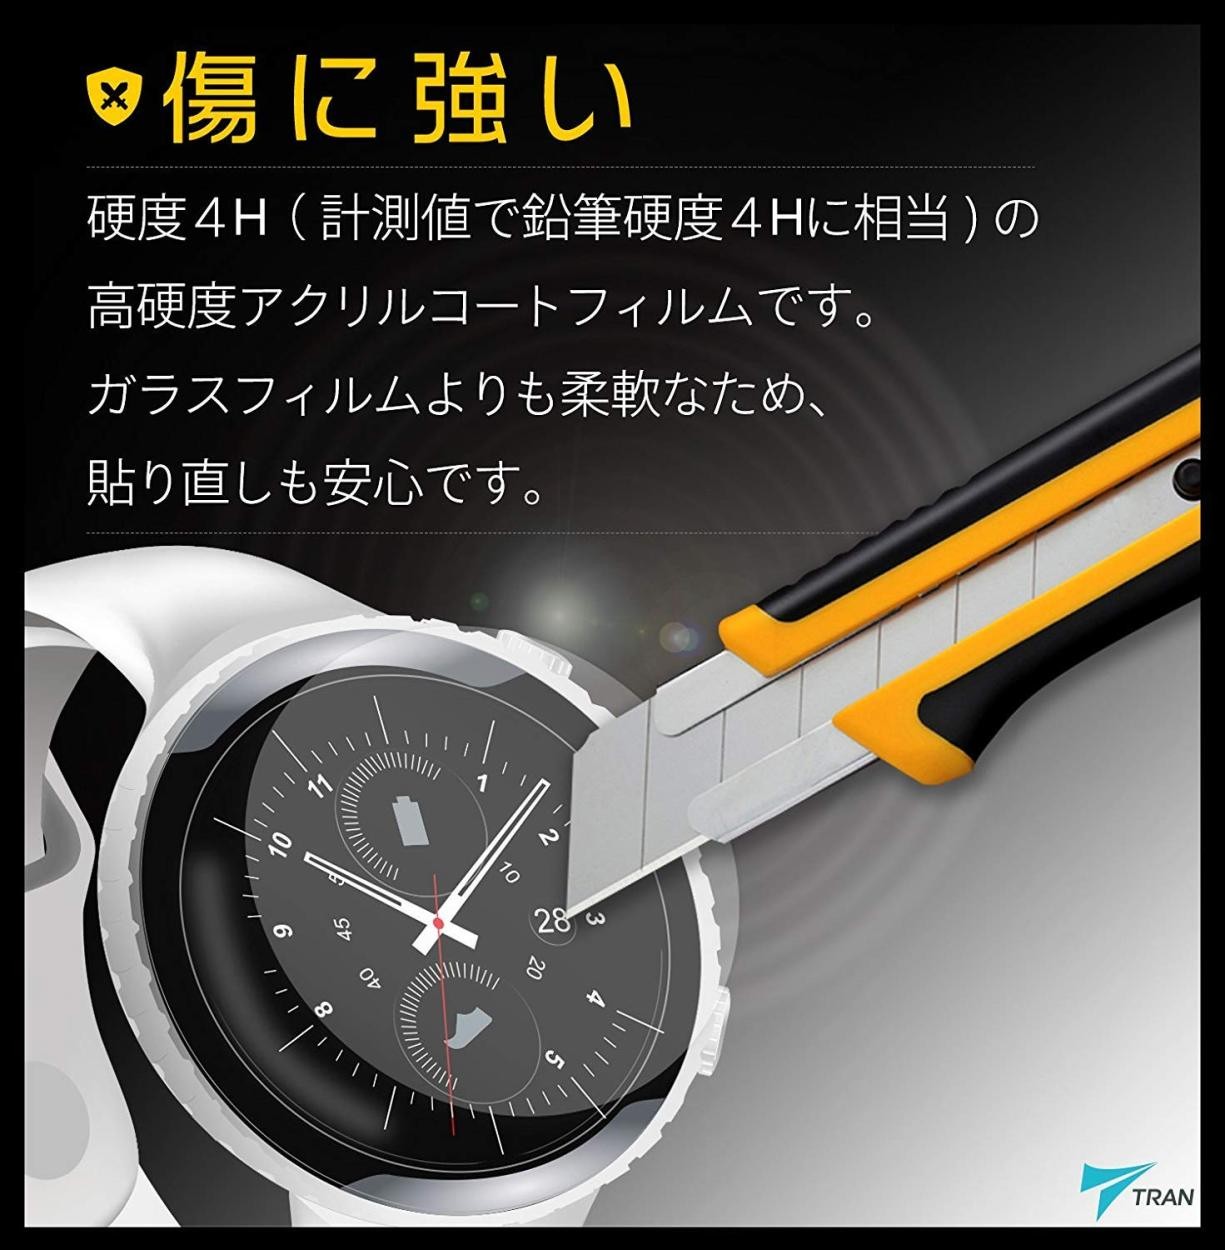 【送料無料】液晶保護フィルム TRAN トラン(R) CASIO 腕時計 G-SHOCK ジーショック 対応液晶保護フィルム 2枚セット  高硬度アクリルコート for DW-5600BB他 LARUTANオンラインショップ